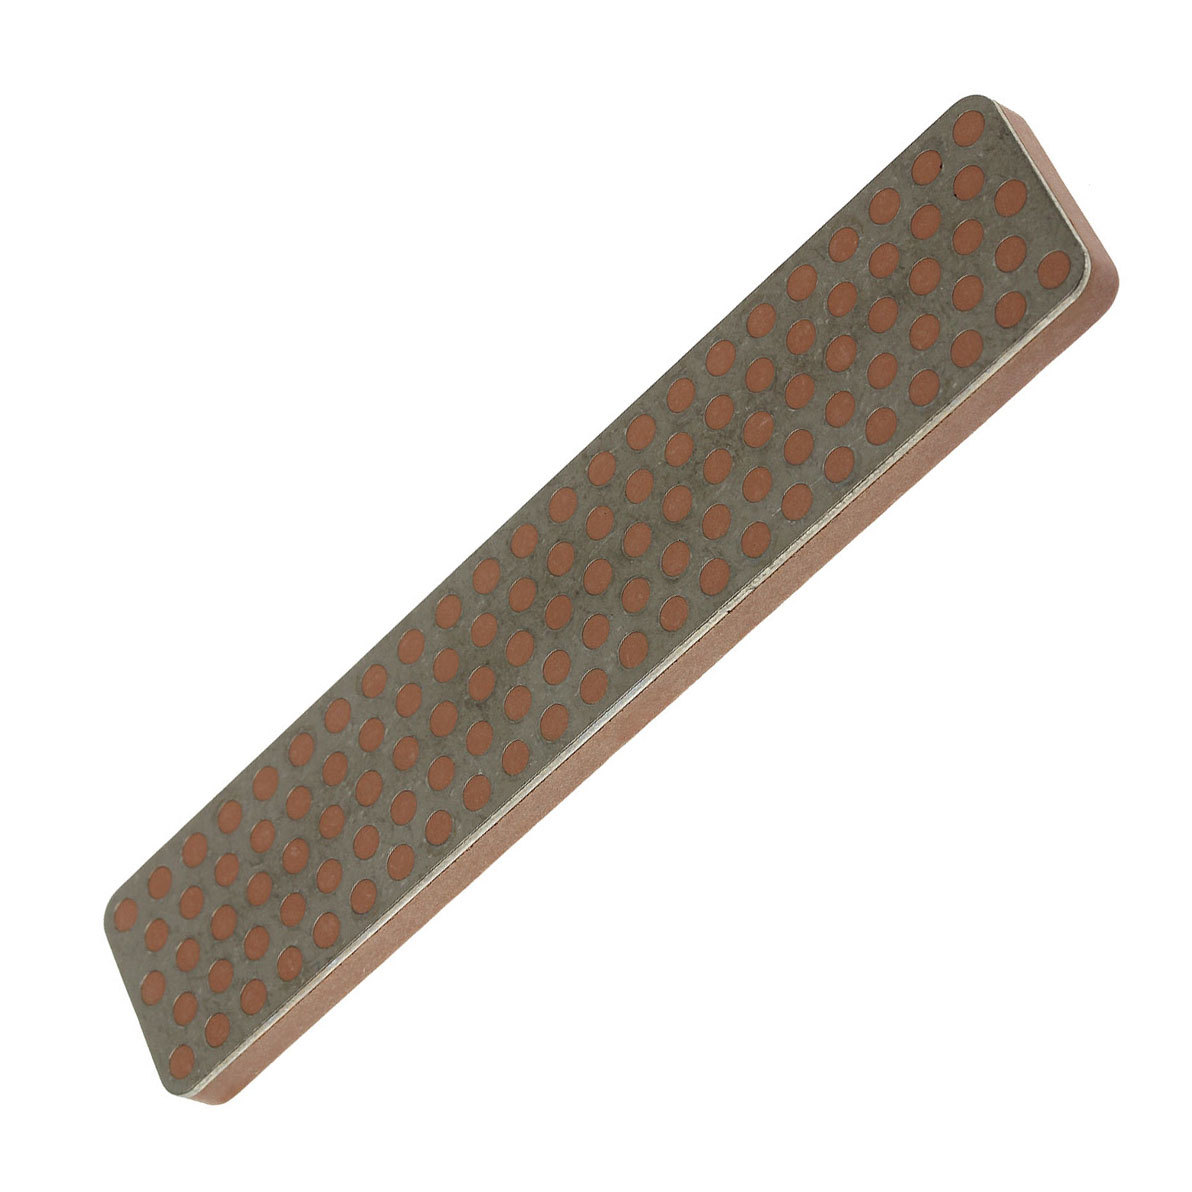 Алмазный брусок для точильного набора DMT Aligner™ Extra-Extra Fine, 8000 mesh, 3 micron брусок алмазный точильный dmt fine 600 mesh 25 micron с резиновыми ножками